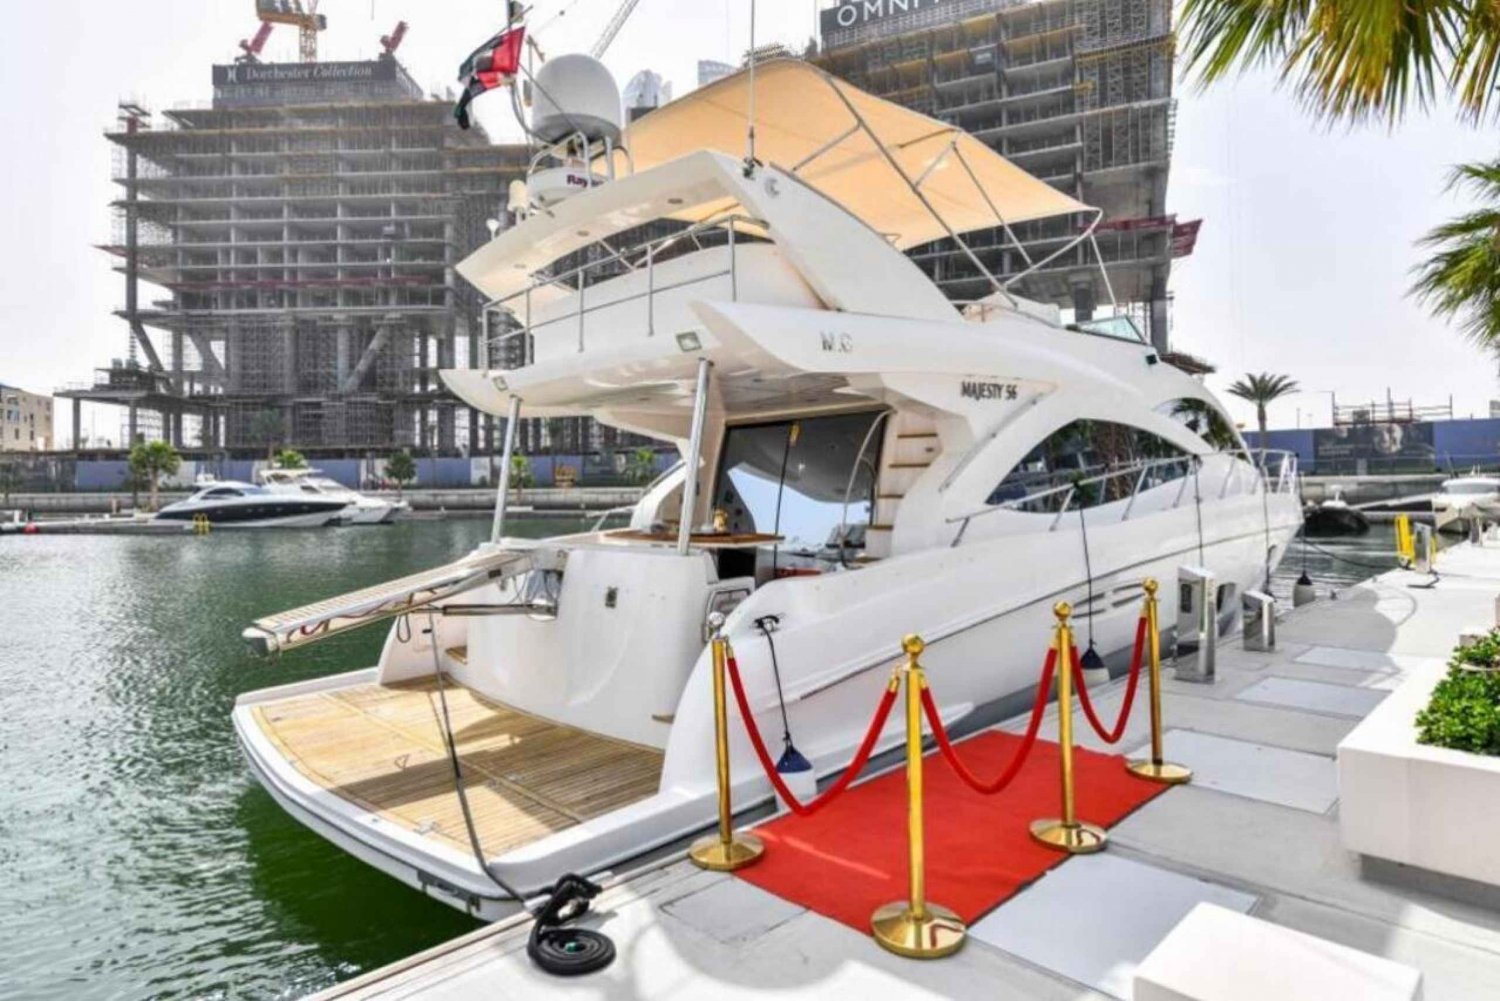 Dubai: Tour privado en yate de lujo por la Marina